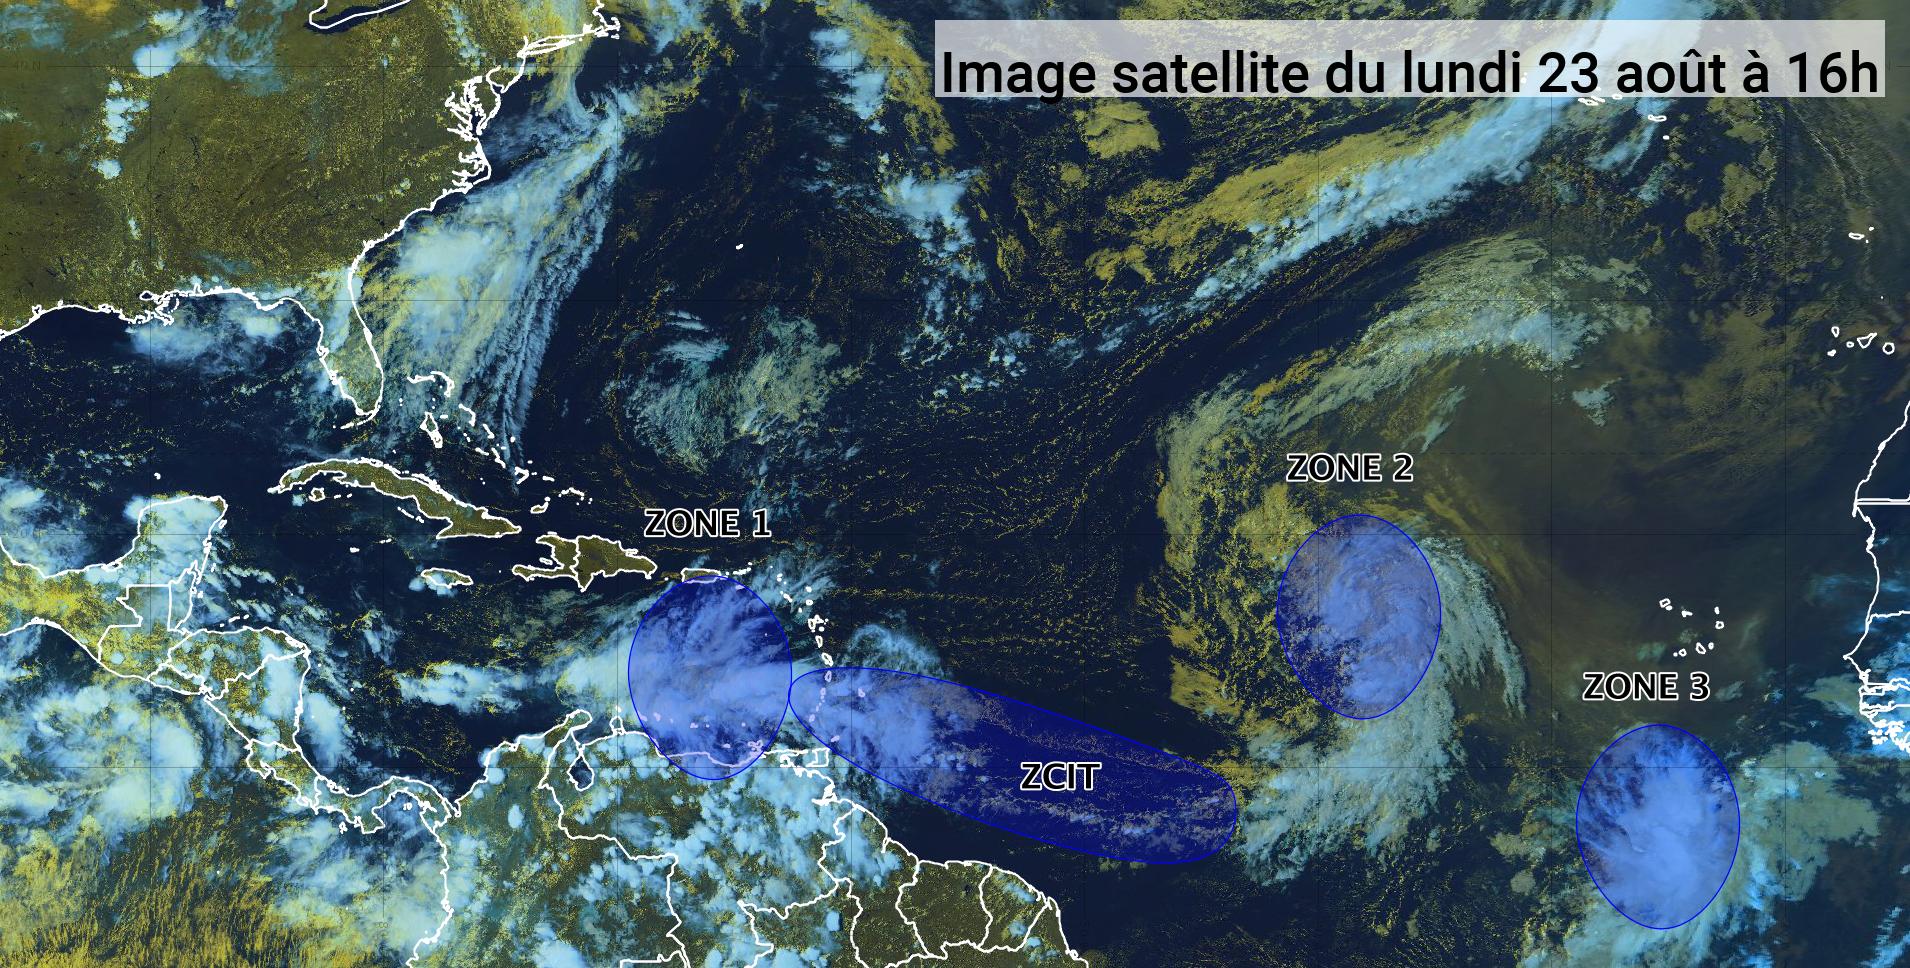     Pas de cyclone en cours mais 3 ondes tropicales sous surveillance (bulletin du 23/08/21)

